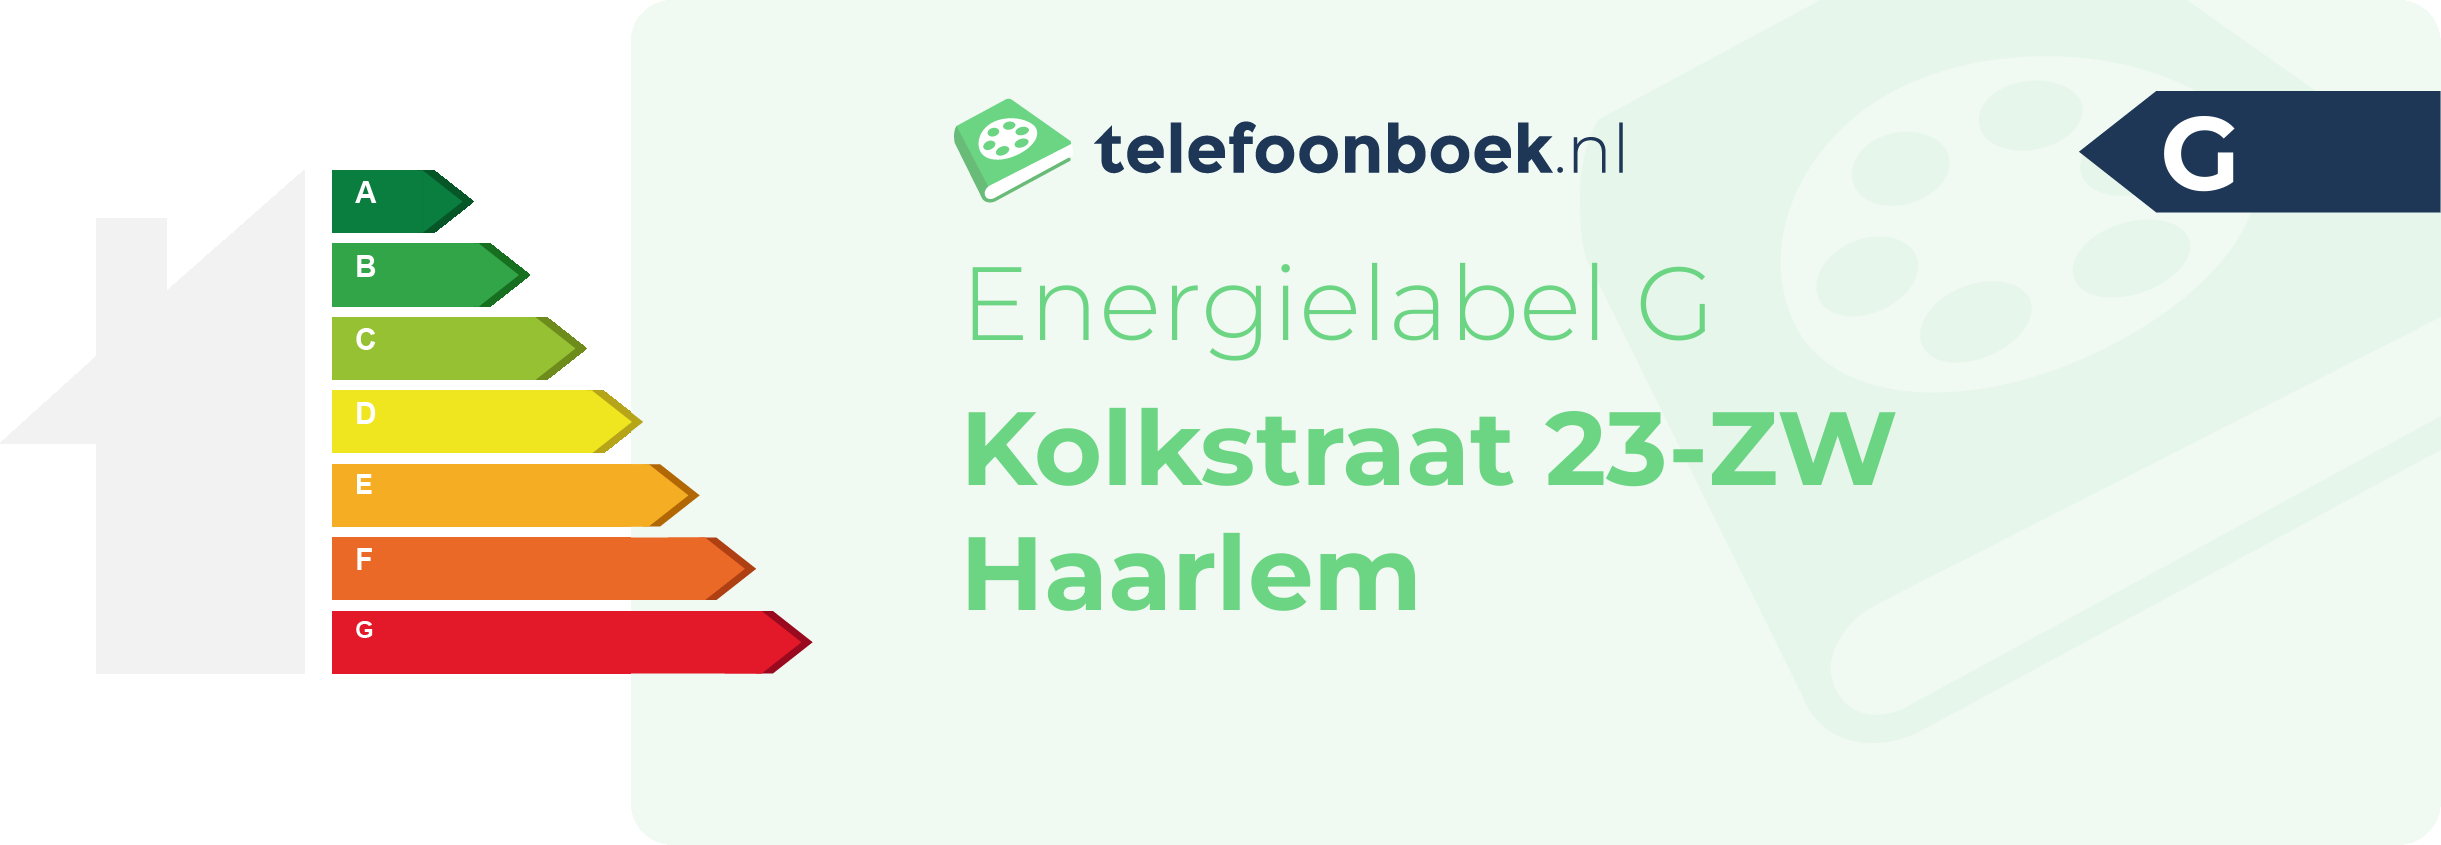 Energielabel Kolkstraat 23-ZW Haarlem